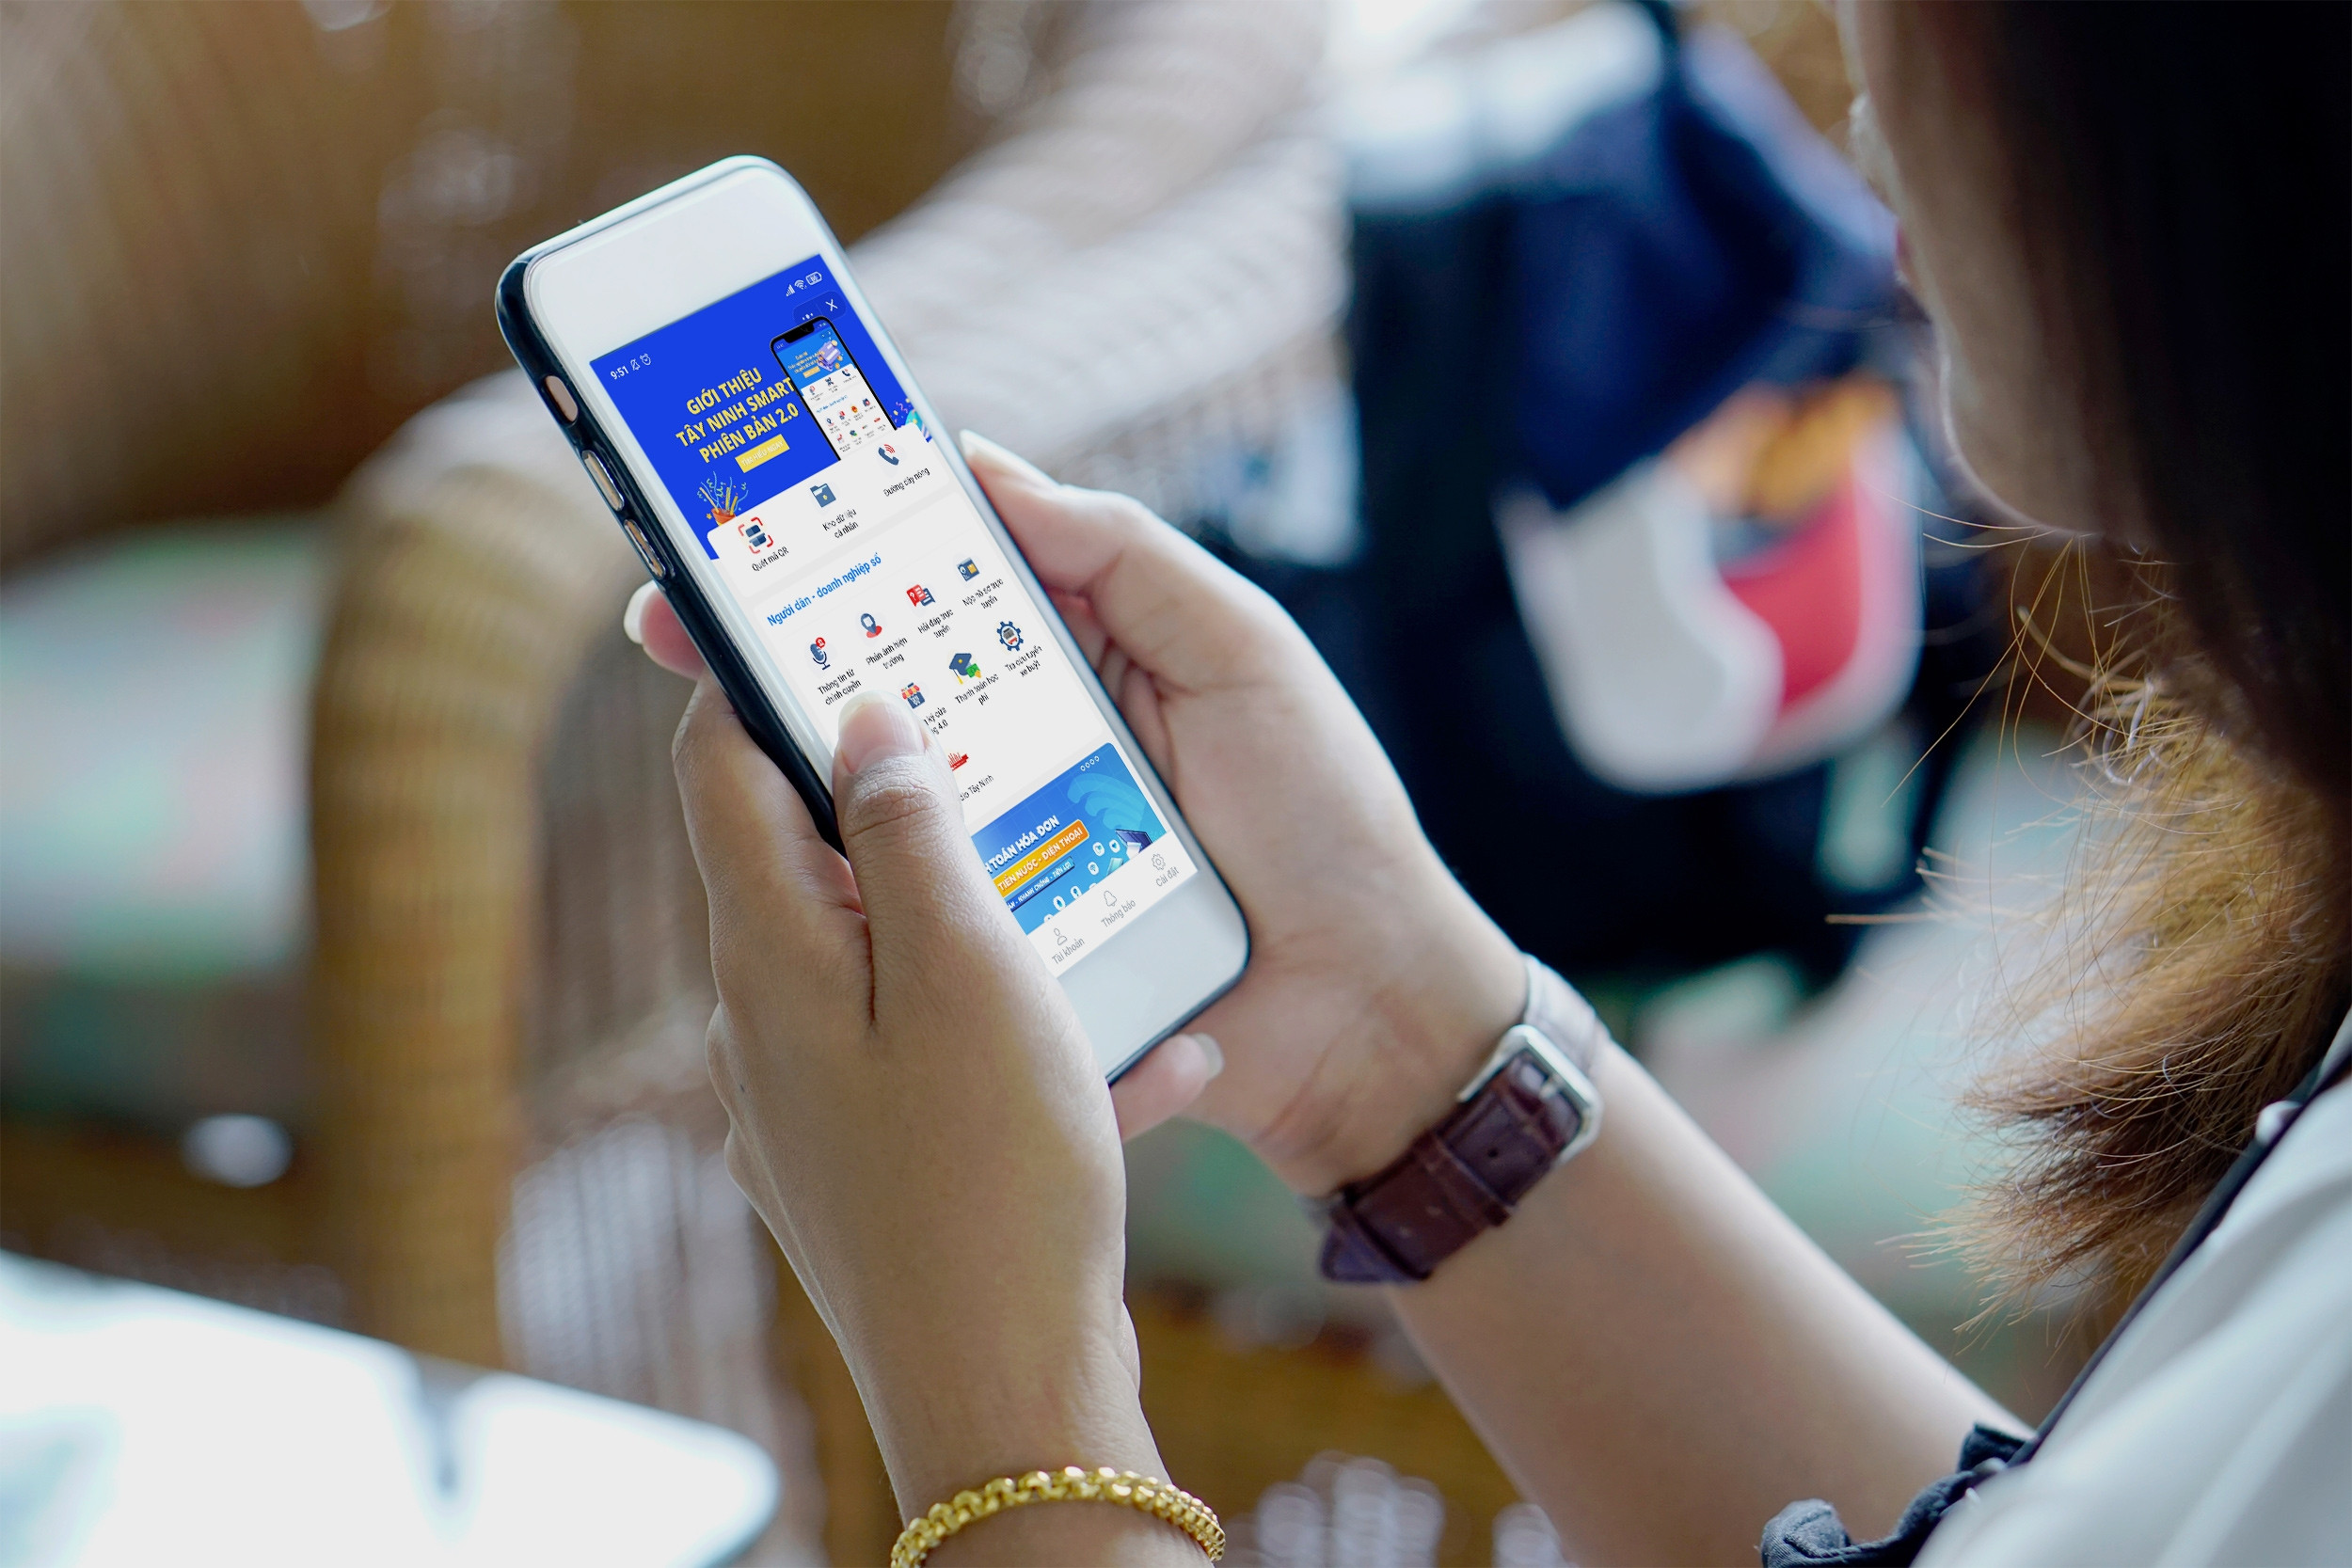 Tây Ninh dùng mini app của Zalo để thúc đẩy sử dụng dịch vụ công